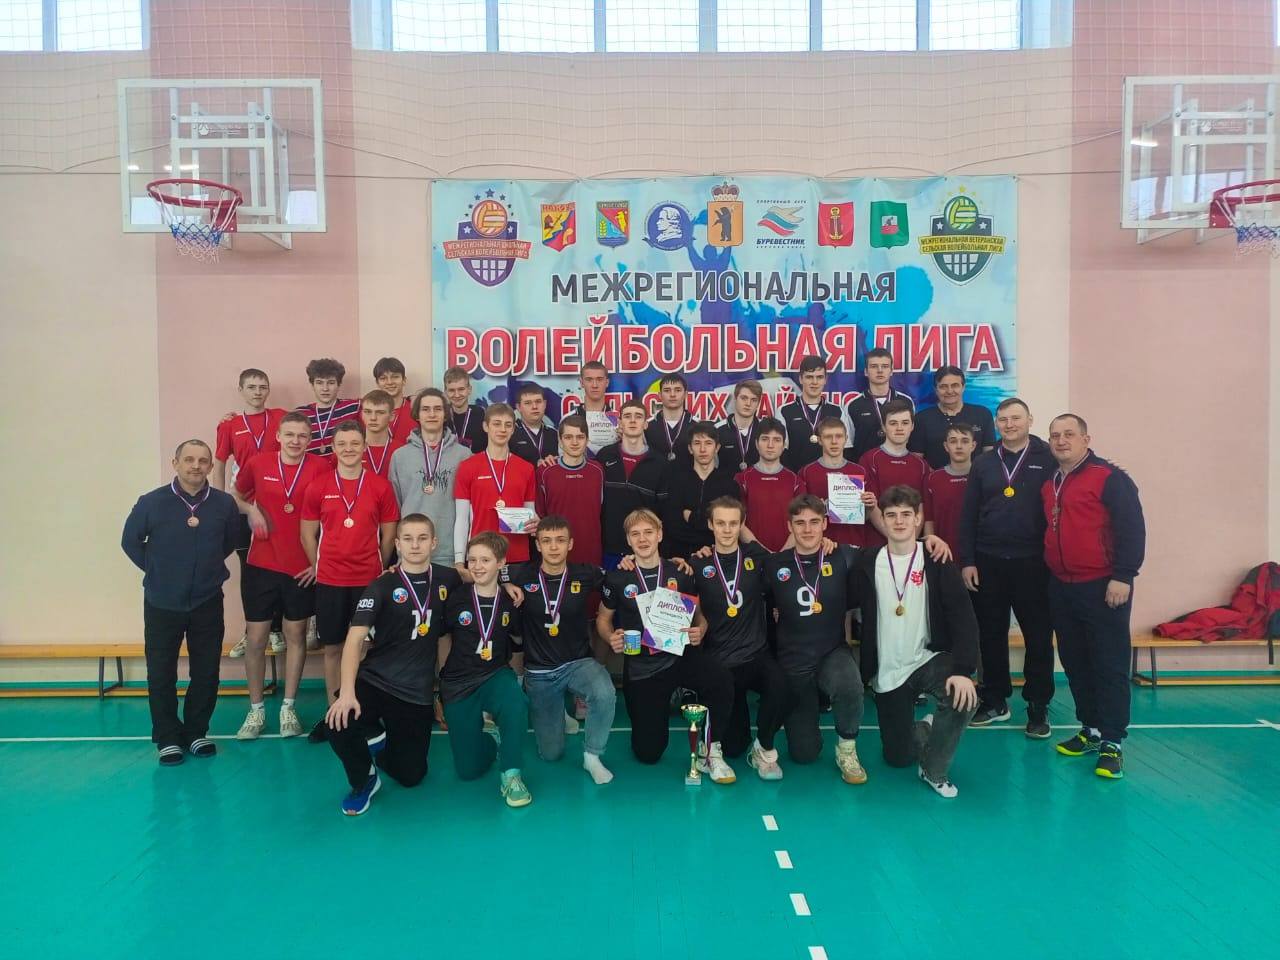 Определены победители ярославского первенства по волейболу среди сельских школ